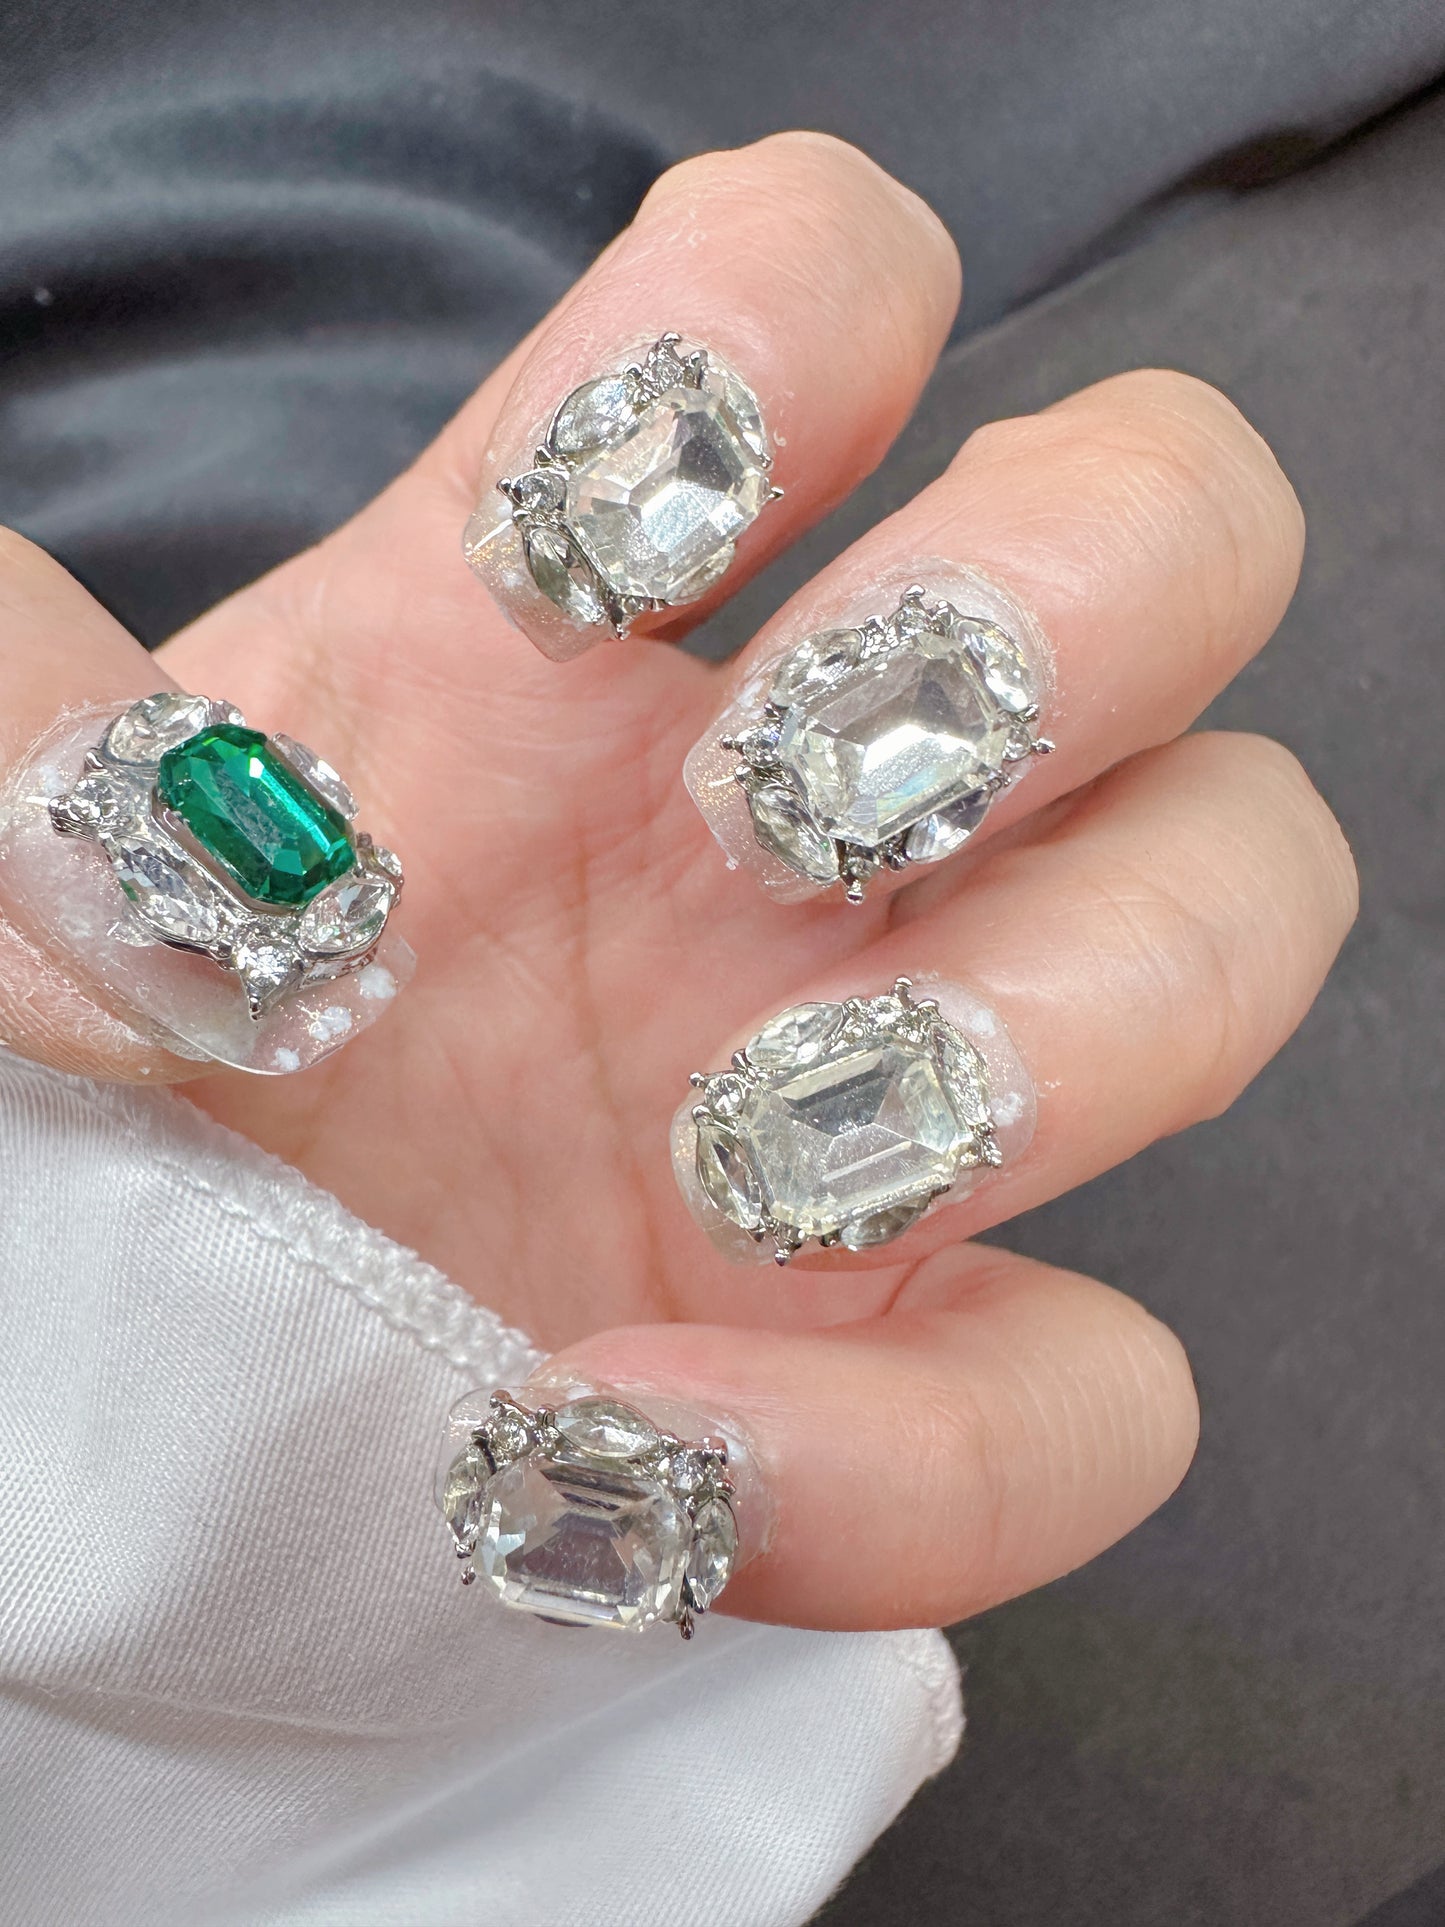 Short diamond (short) Reusable Hand Made Press On Nails Fake Nails